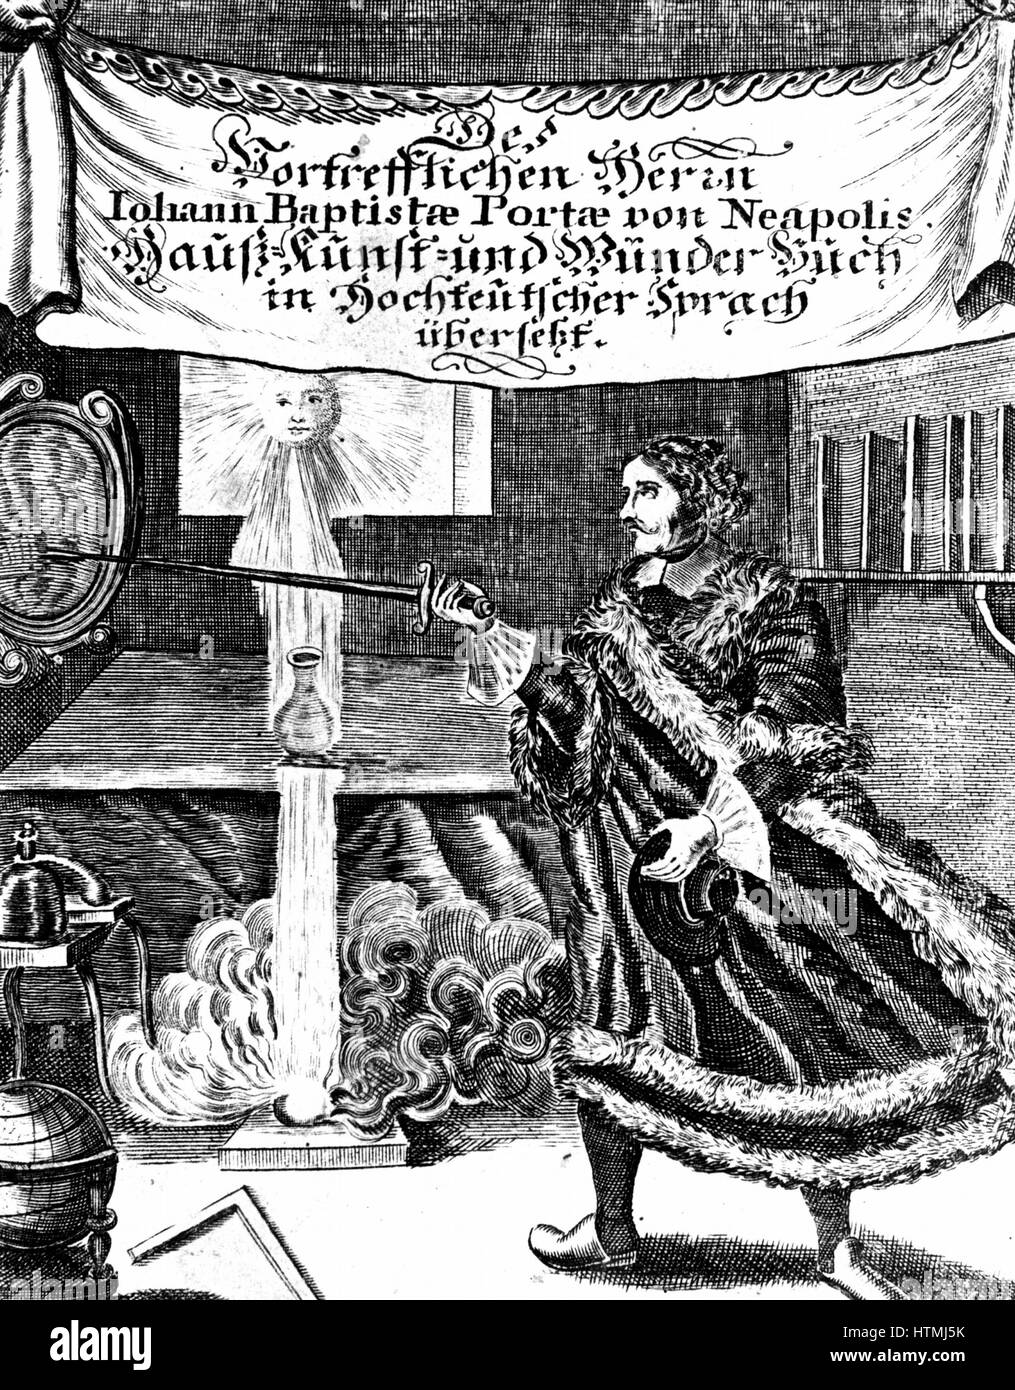 Frontispice de la fin de l'édition de Johannnes Baptista della Porta (1543 - 1615) 'Magia naturalis' (Nuremberg 1715). Photo comprend un certain nombre de caractéristiques essentielles telles que l'alchimie du philosophe hermétique oeuf, la vase et le Soleil (or). La gravure. Banque D'Images